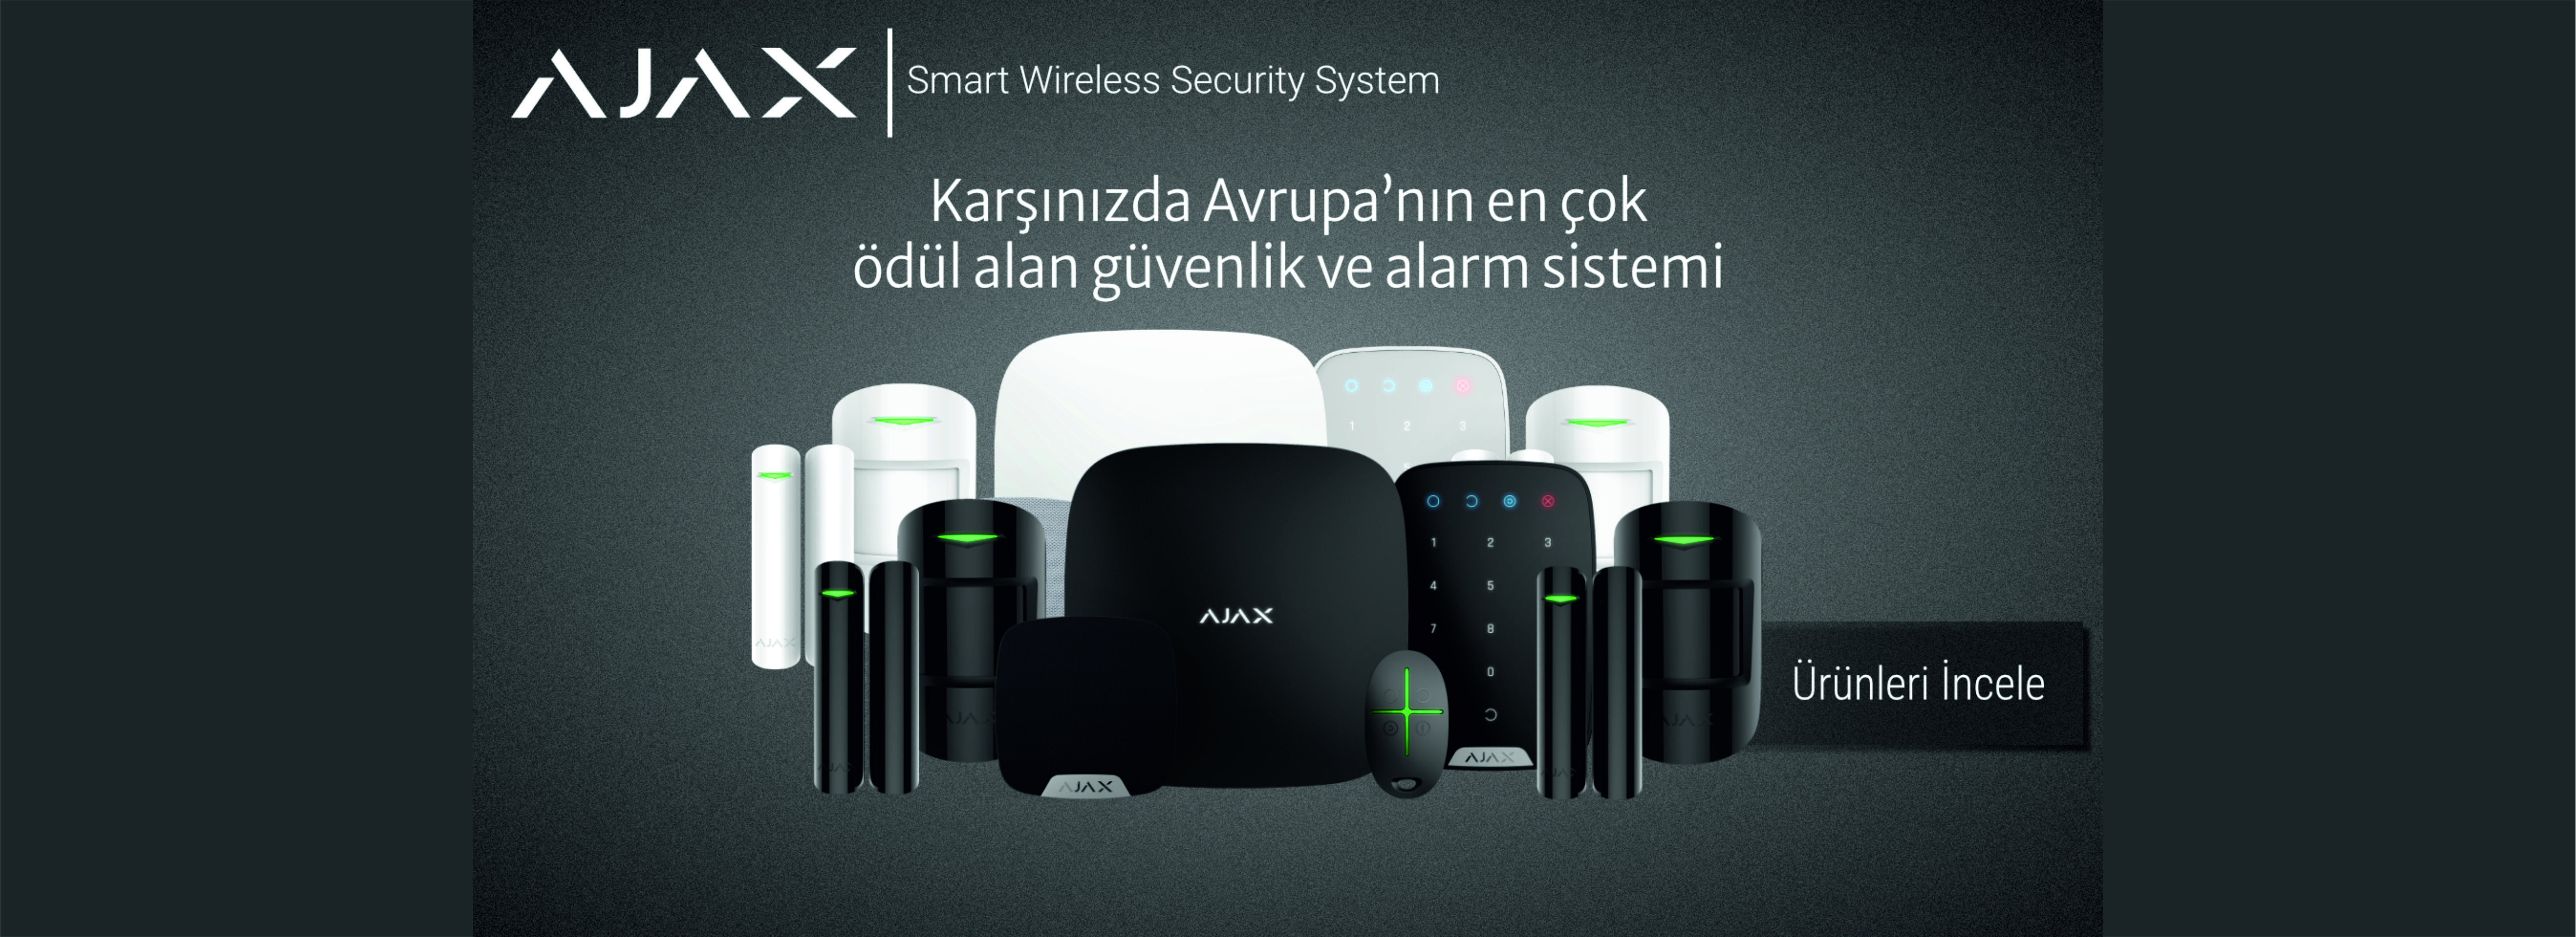 Ajax Hırsız Alarm Sistemleri